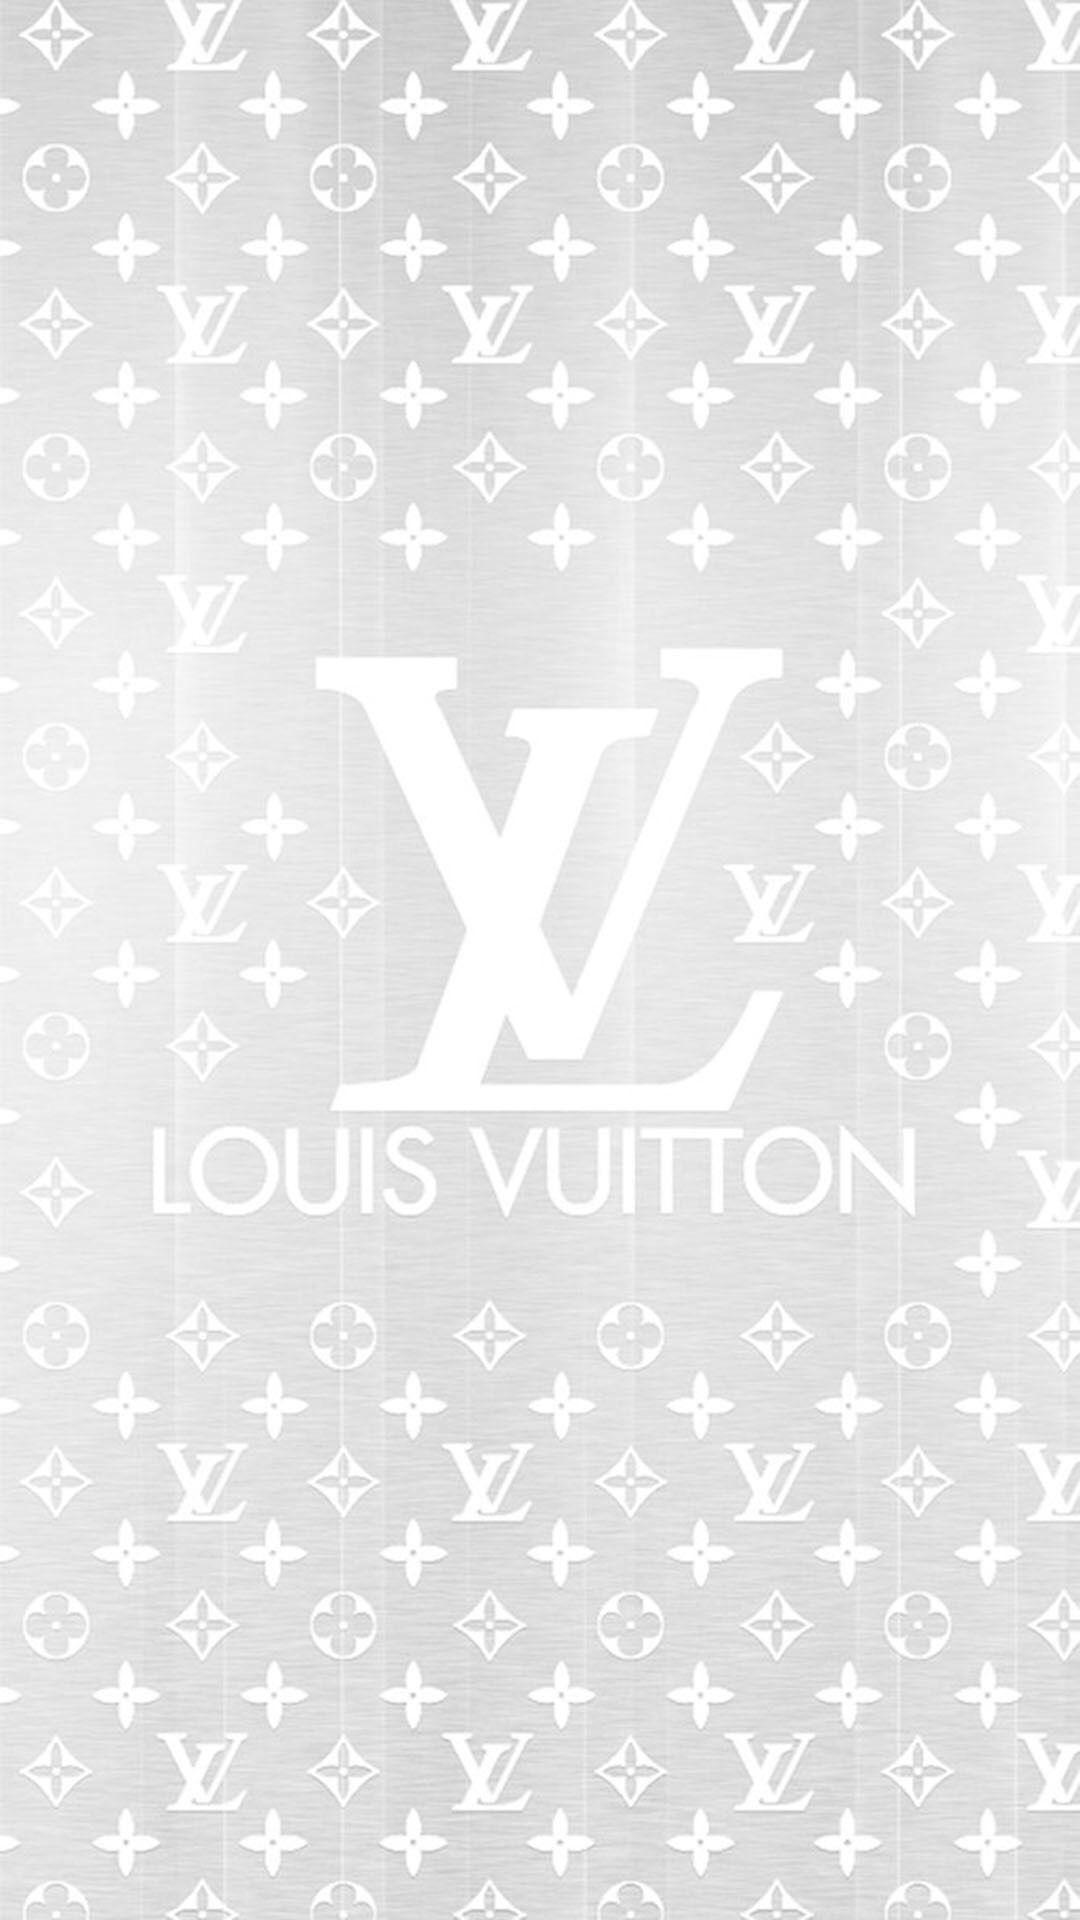 Hình ảnh đẹp Louis Vuitton mang đến không chỉ là vẻ đẹp của sản phẩm, mà còn là sự truyền tải tinh thần của thương hiệu sang trọng, quý phái. Hãy cùng chiêm ngưỡng hình ảnh đẹp Louis Vuitton và cảm nhận sức hút của thương hiệu này nhé.